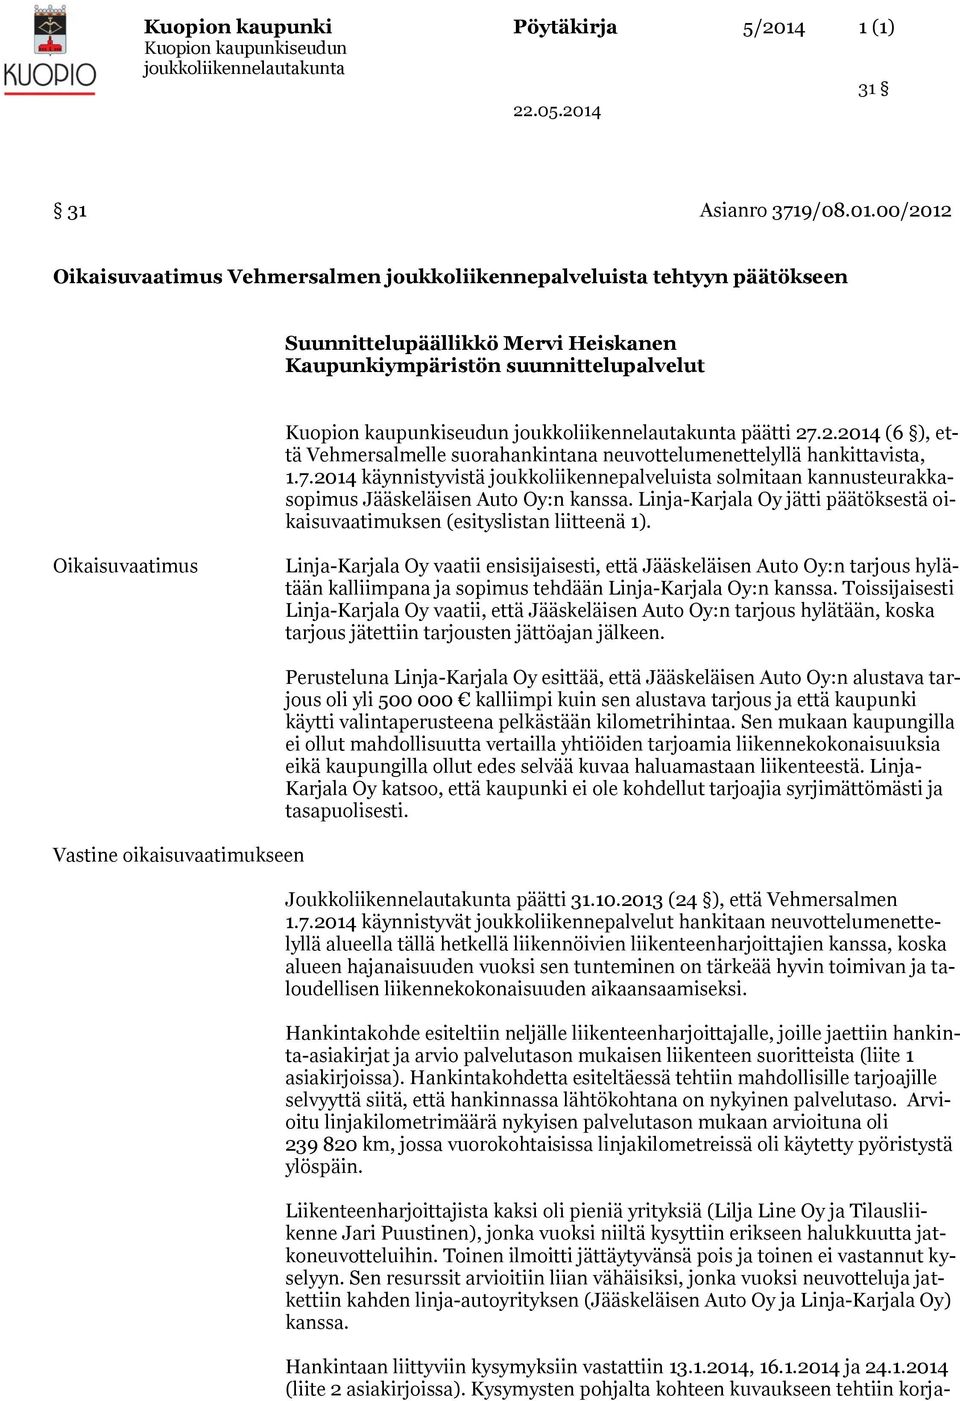 7.2014 käynnistyvistä joukkoliikennepalveluista solmitaan kannusteurakkasopimus Jääskeläisen Auto Oy:n kanssa. Linja-Karjala Oy jätti päätöksestä oikaisuvaatimuksen (esityslistan liitteenä 1).